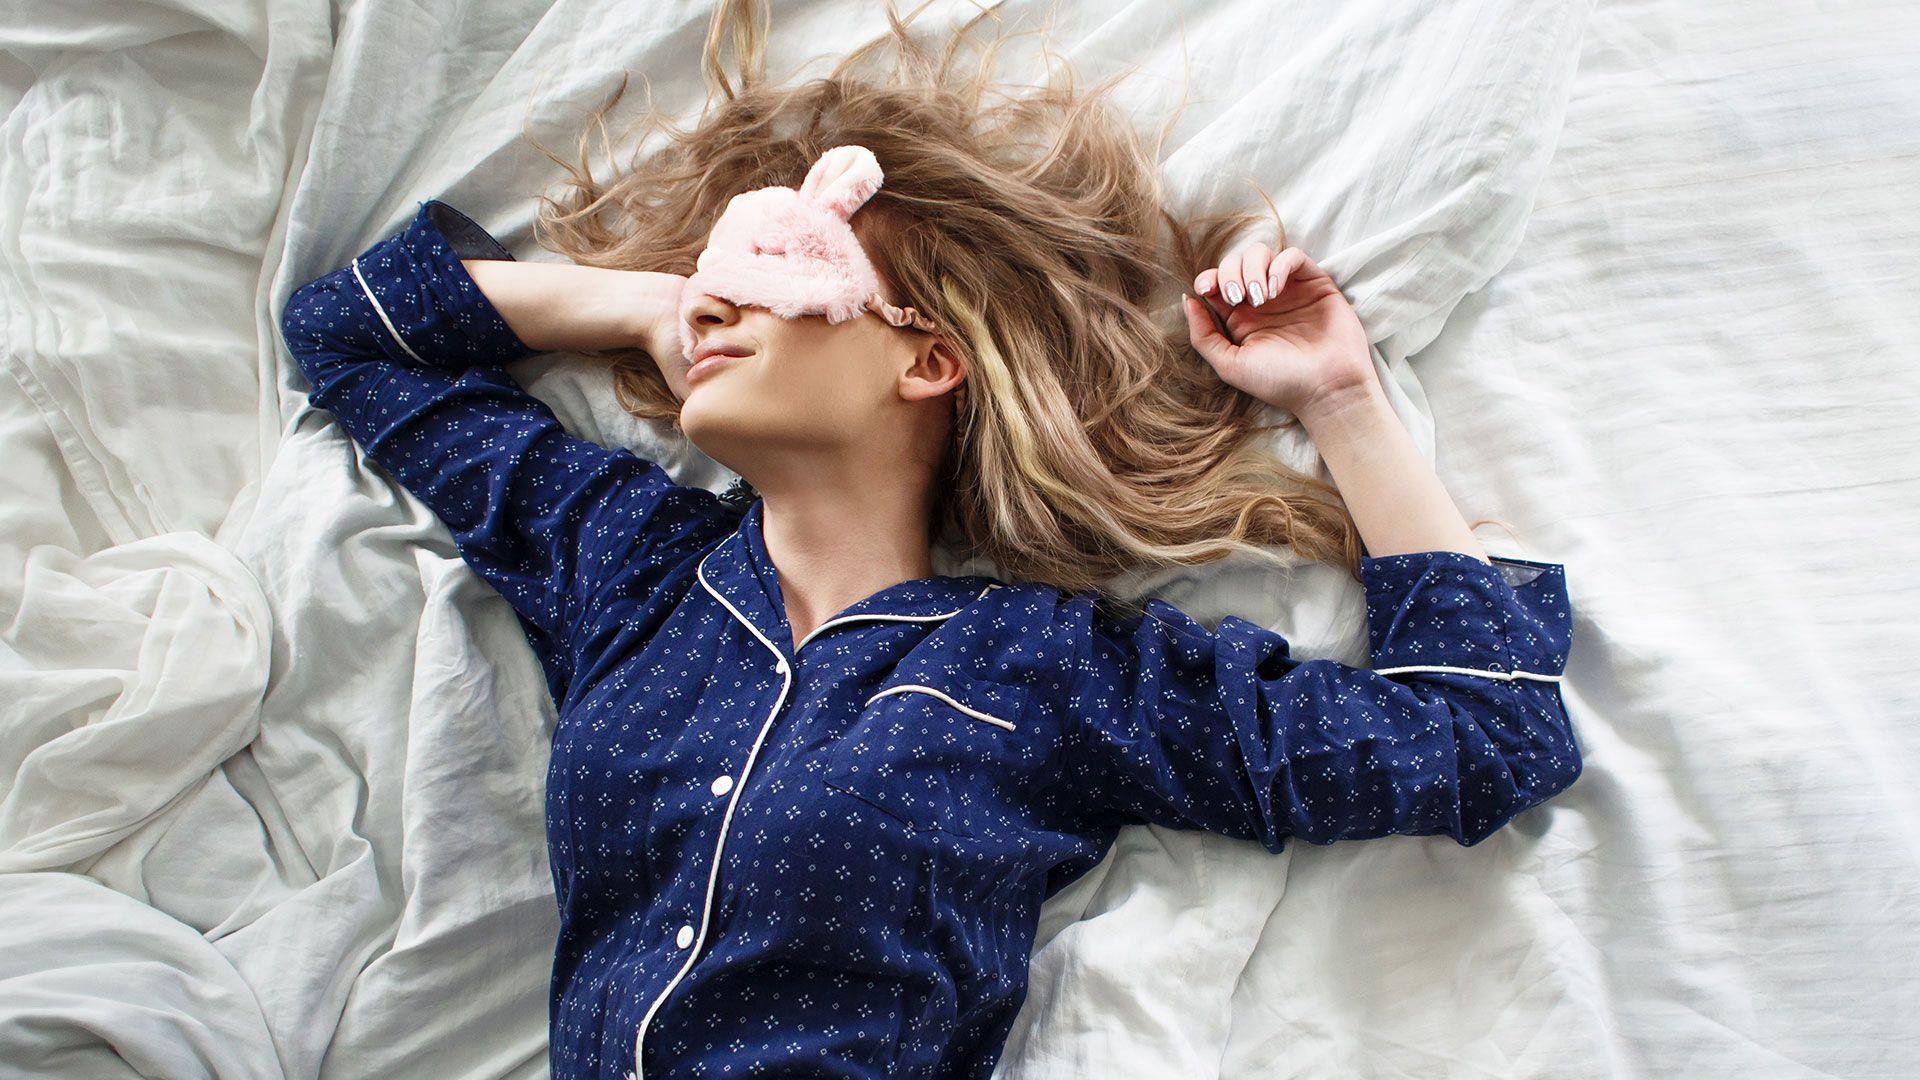 Evitar las siestas diurnas prolongadas ya que pueden interferir con el sueño nocturno 